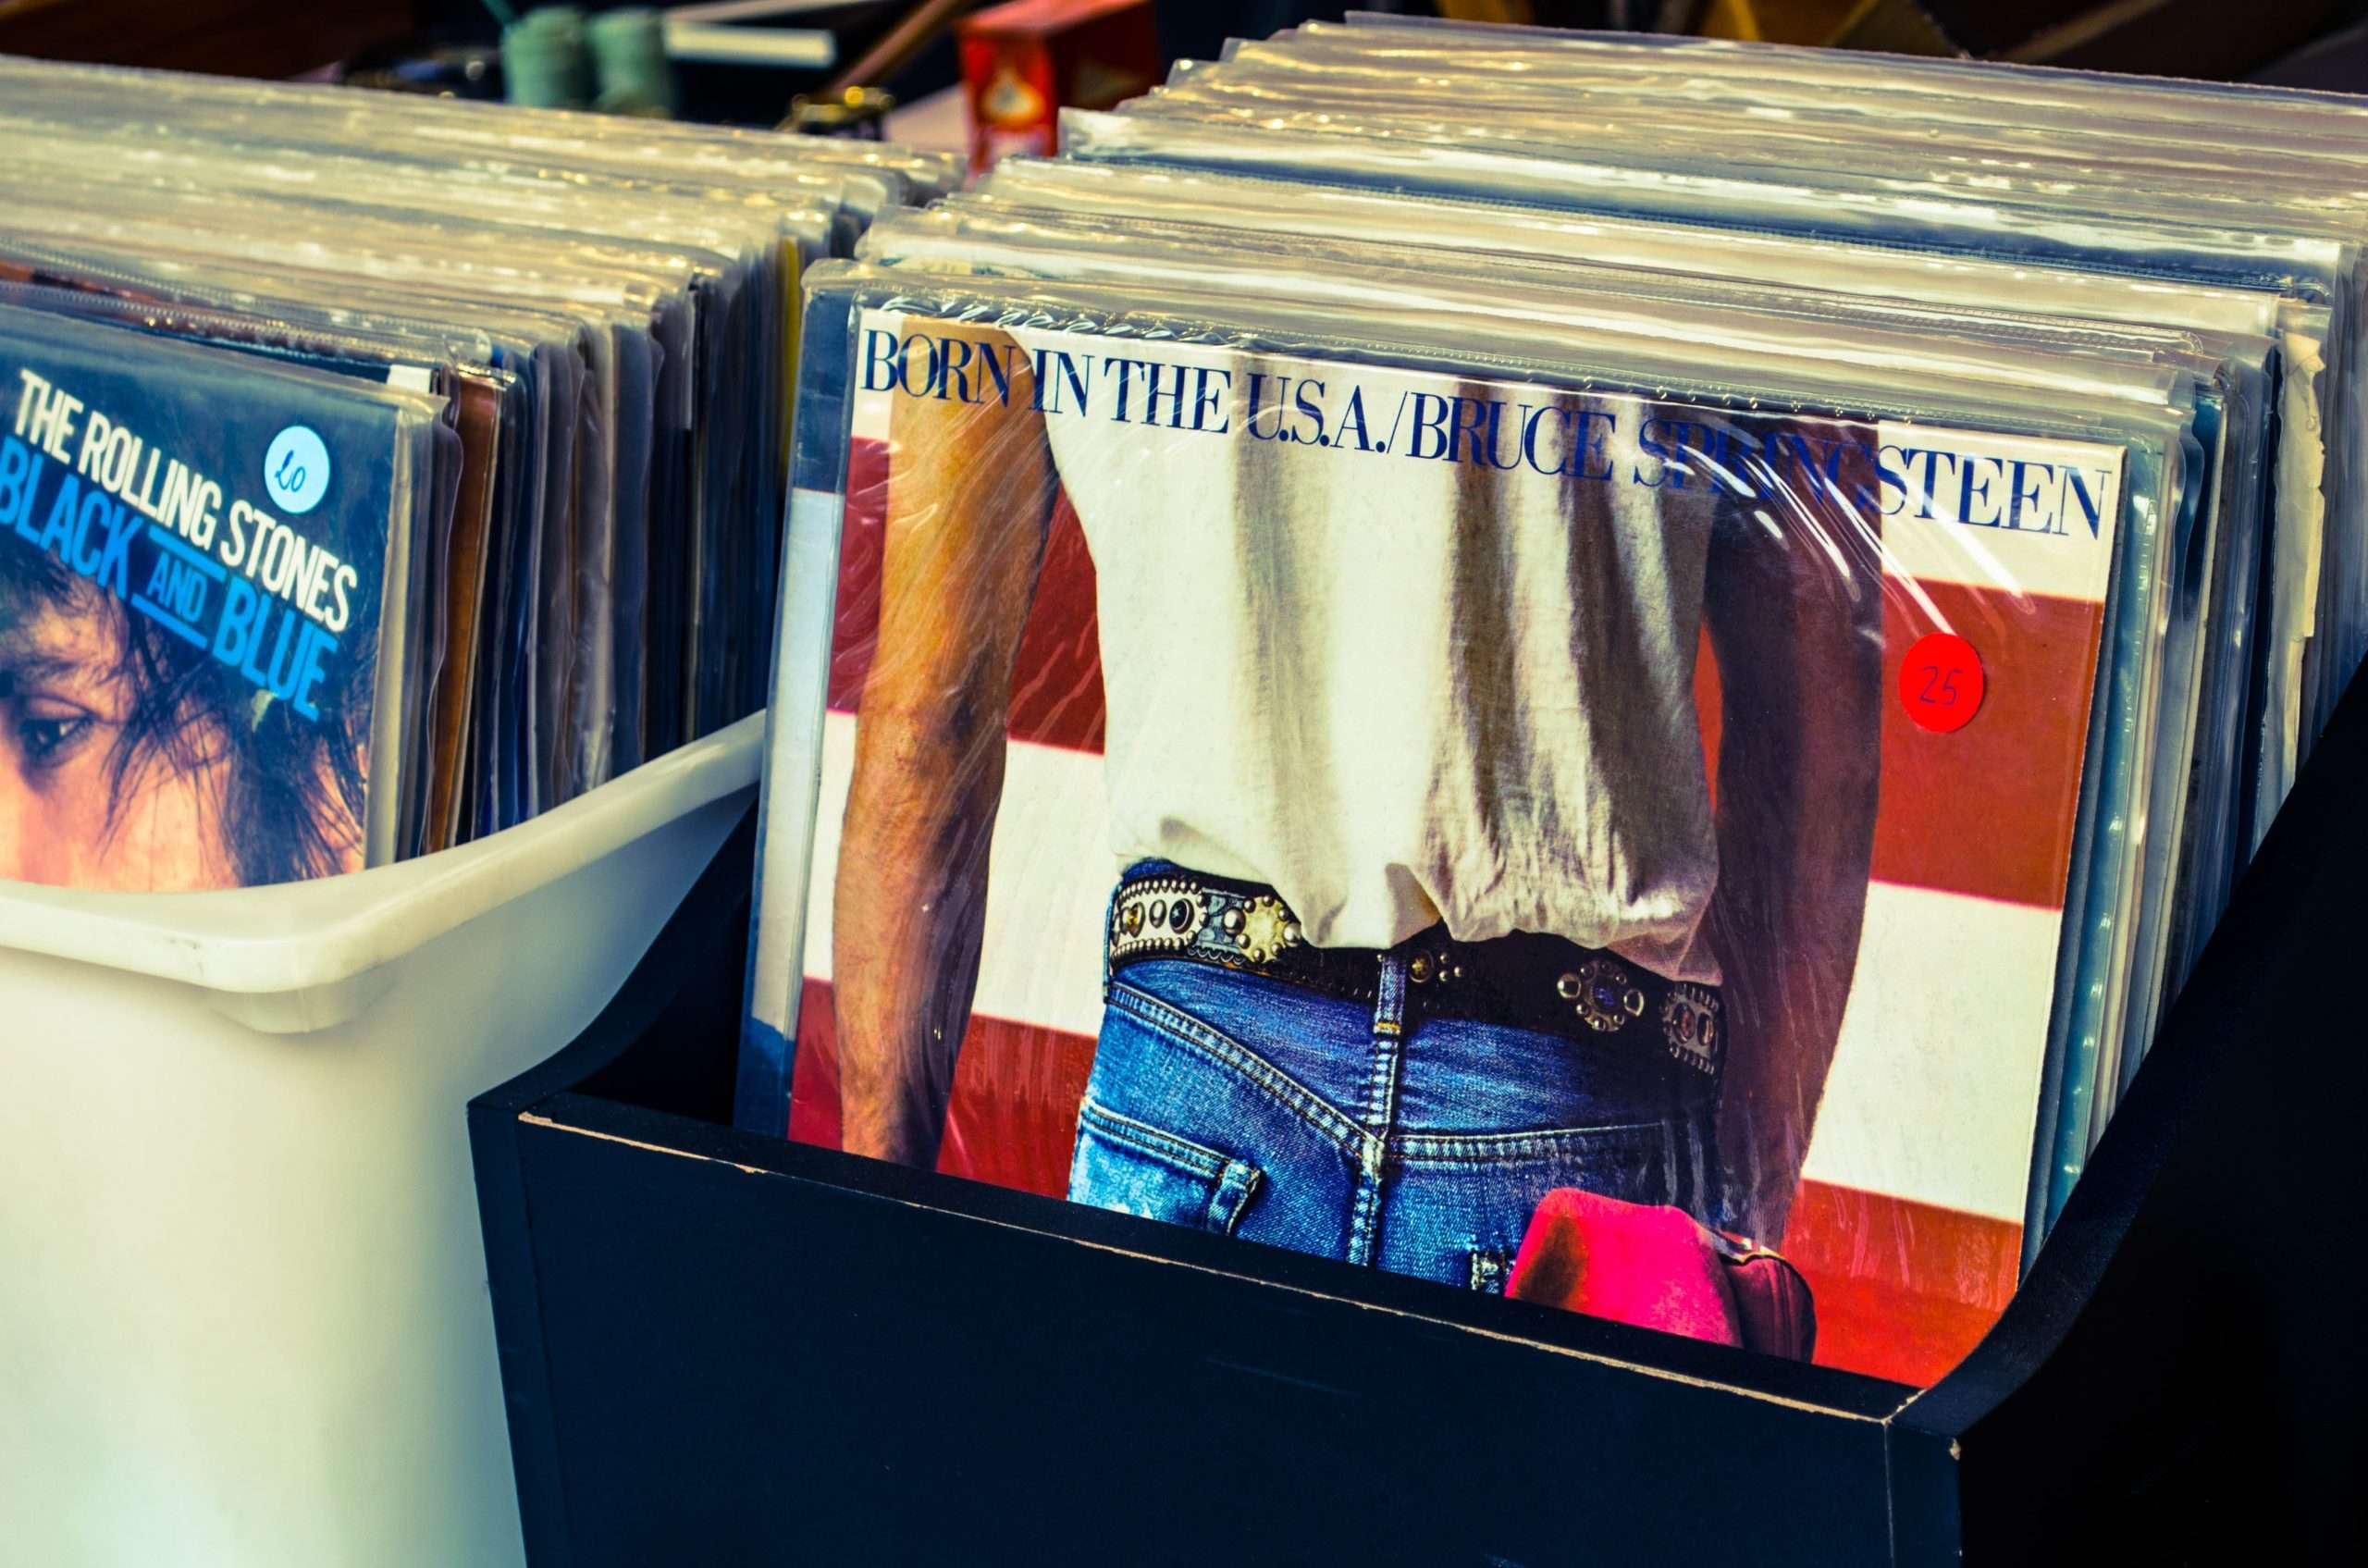 Aprovecha al máximo tus discos de vinilo: descubre 3 lugares donde puedes vender discos de vinilo a buen precio